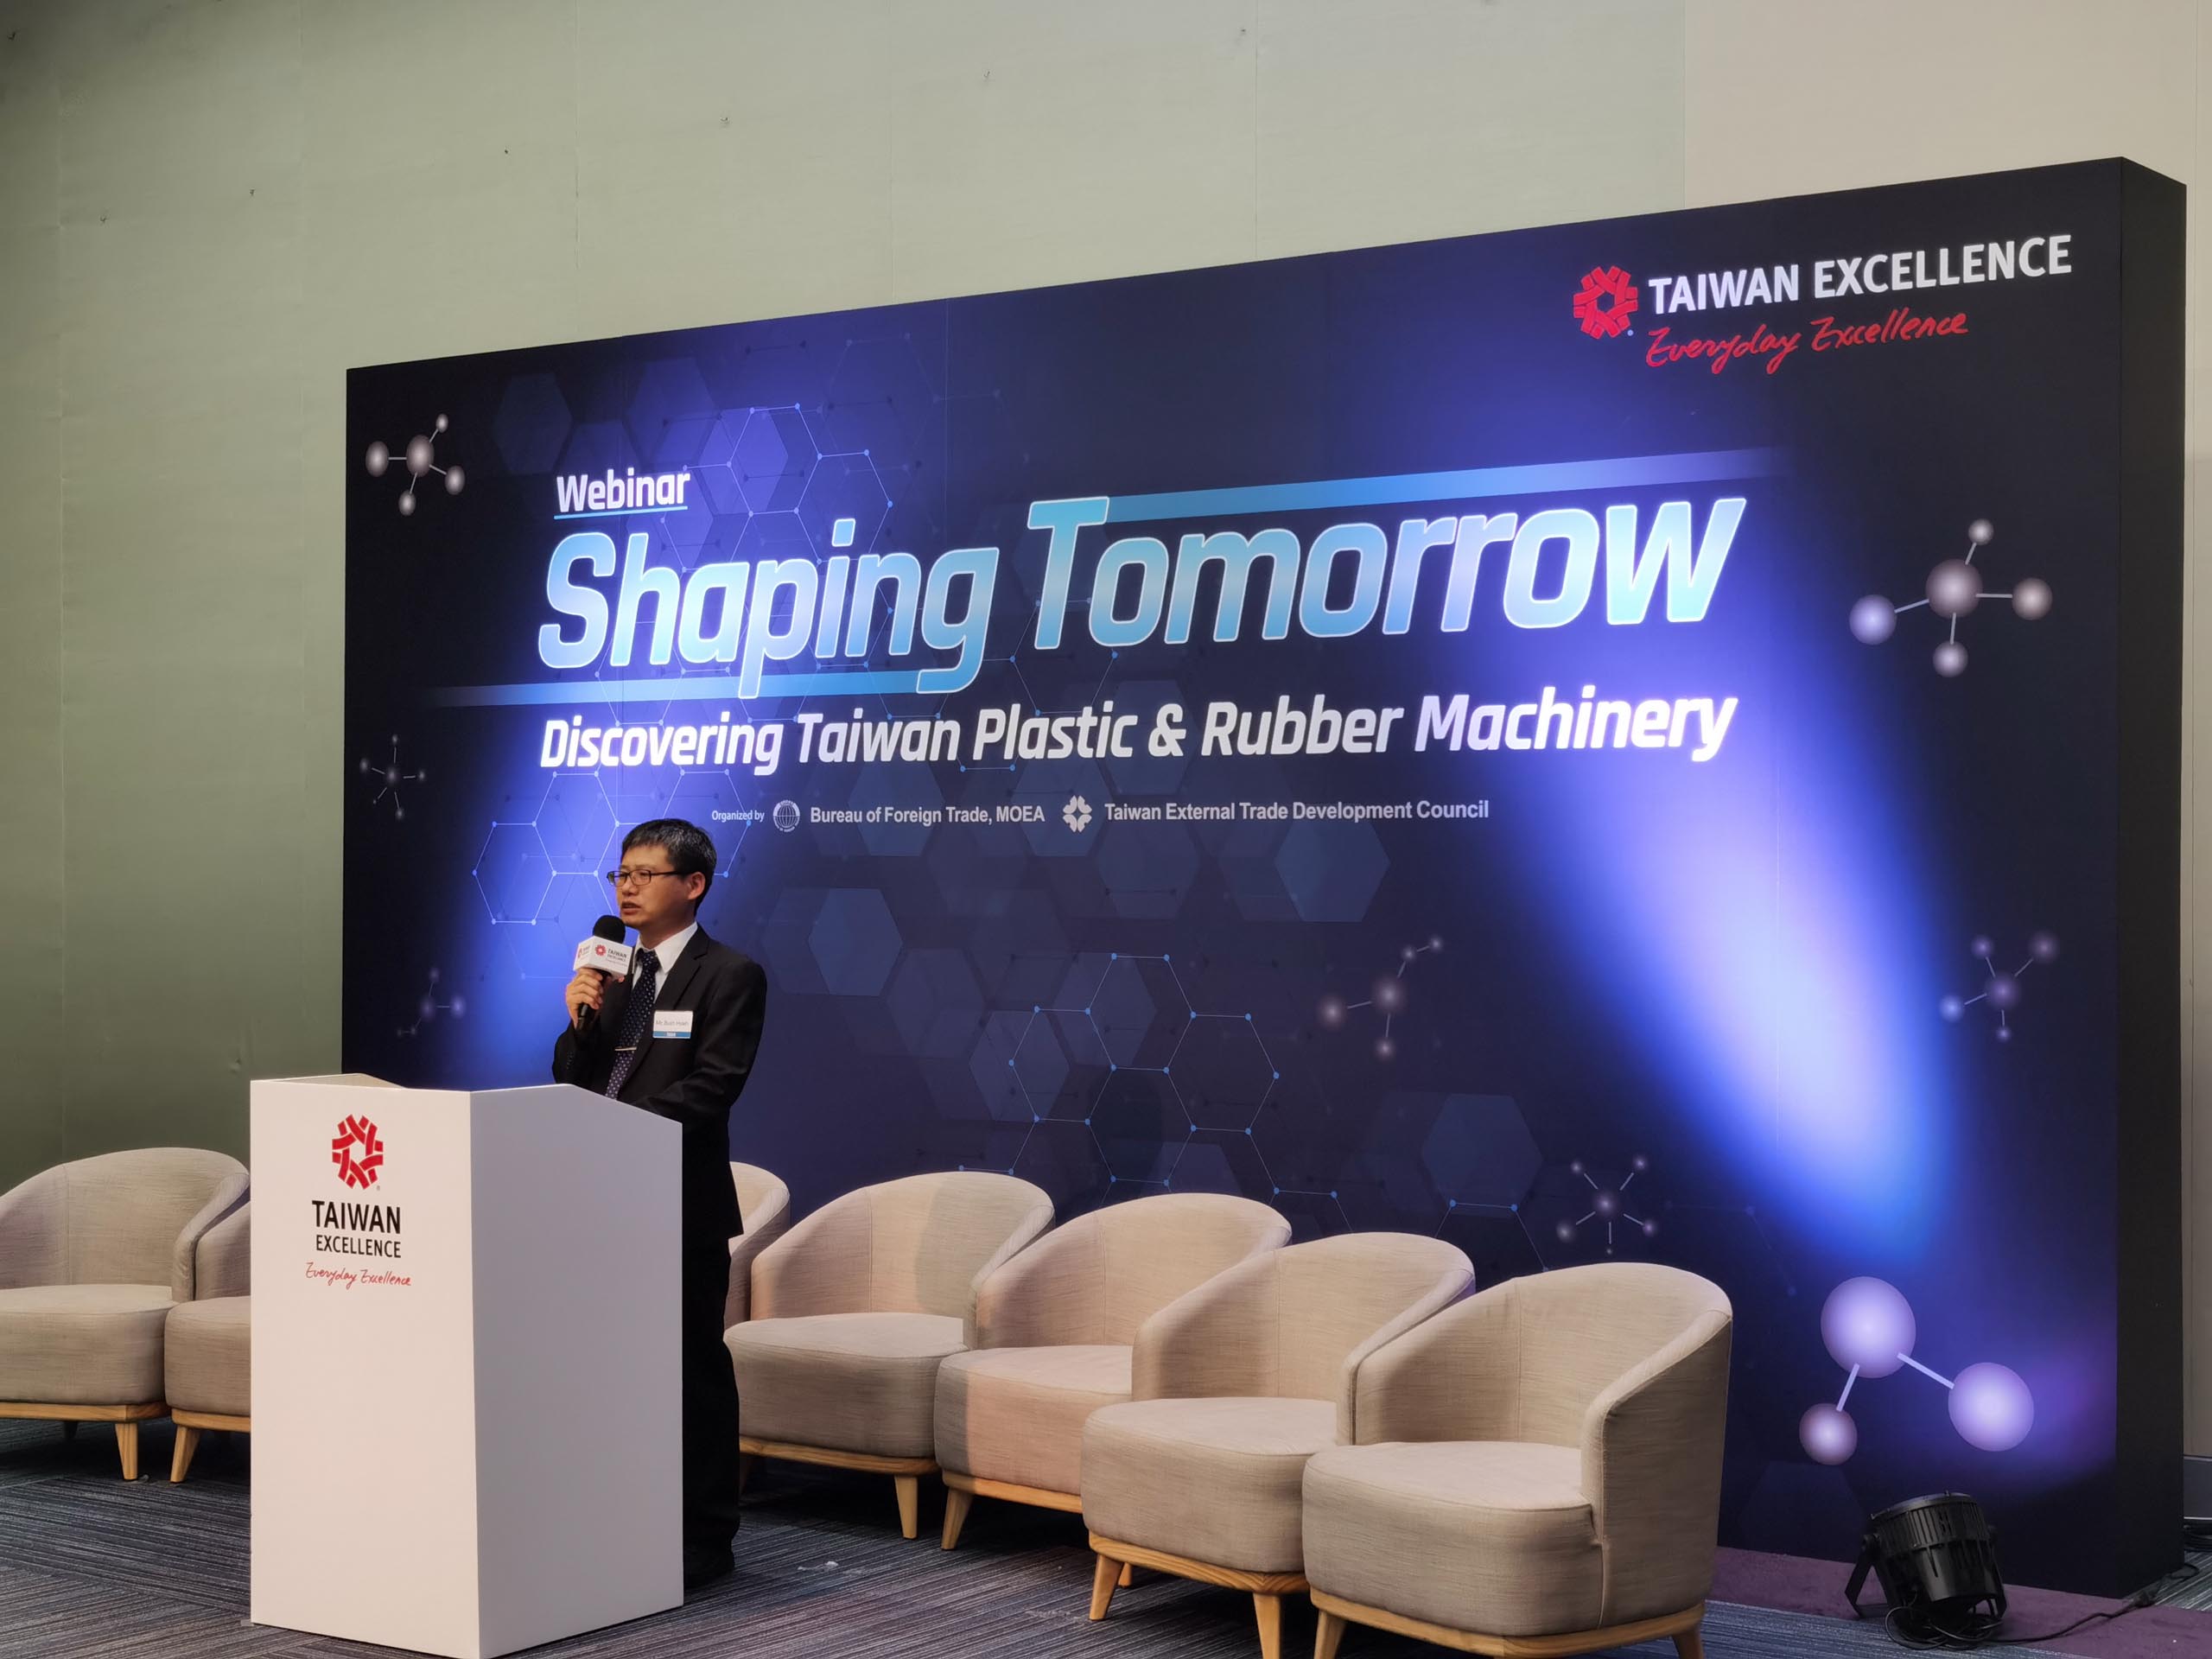 Taiwan Excellence giới thiệu những công nghệ tiên tiến định hình tương lai ngành sản xuất nhựa và cao su Đài Loan